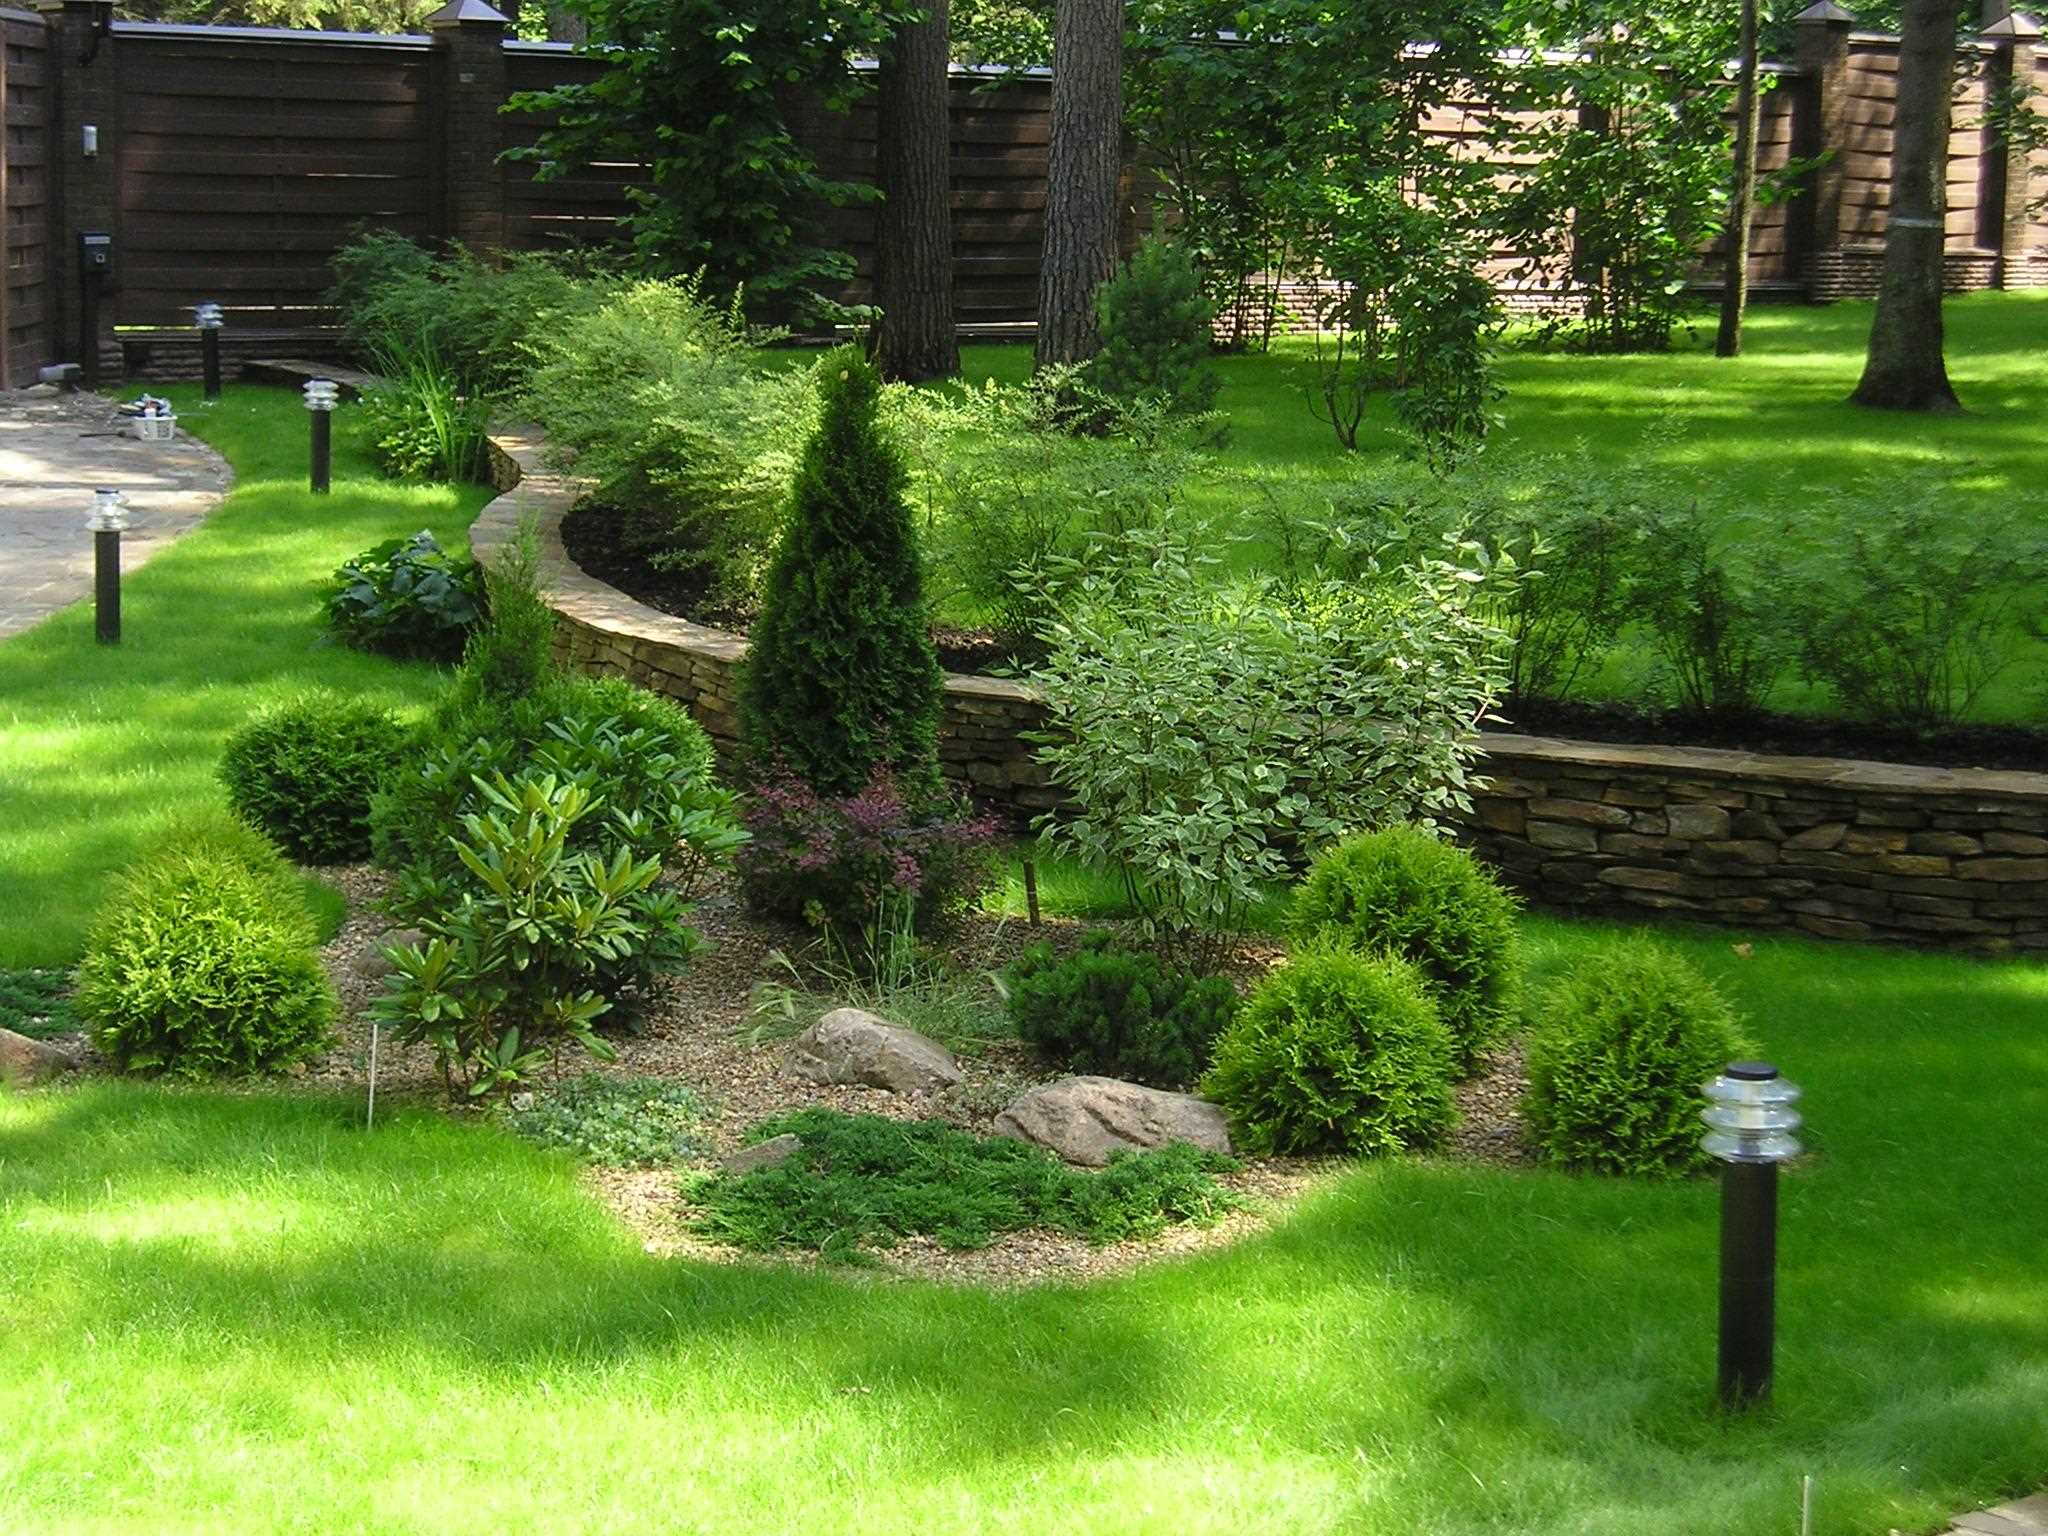 Un exemple d'utilisation de belles plantes dans l'aménagement paysager d'une résidence d'été